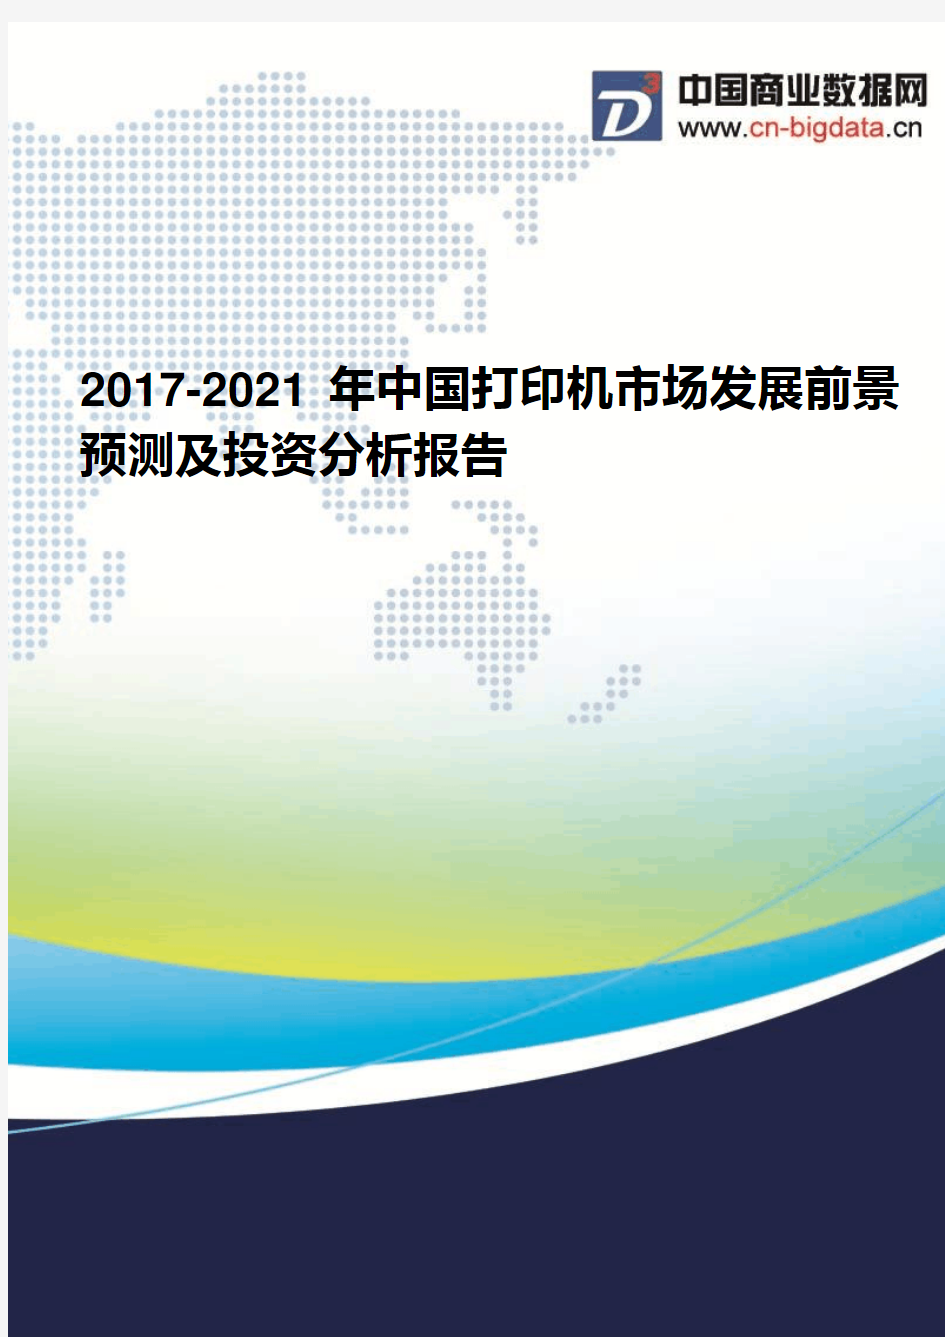 2017-2021年中国打印机市场发展前景预测及投资分析报告(2017版目录)